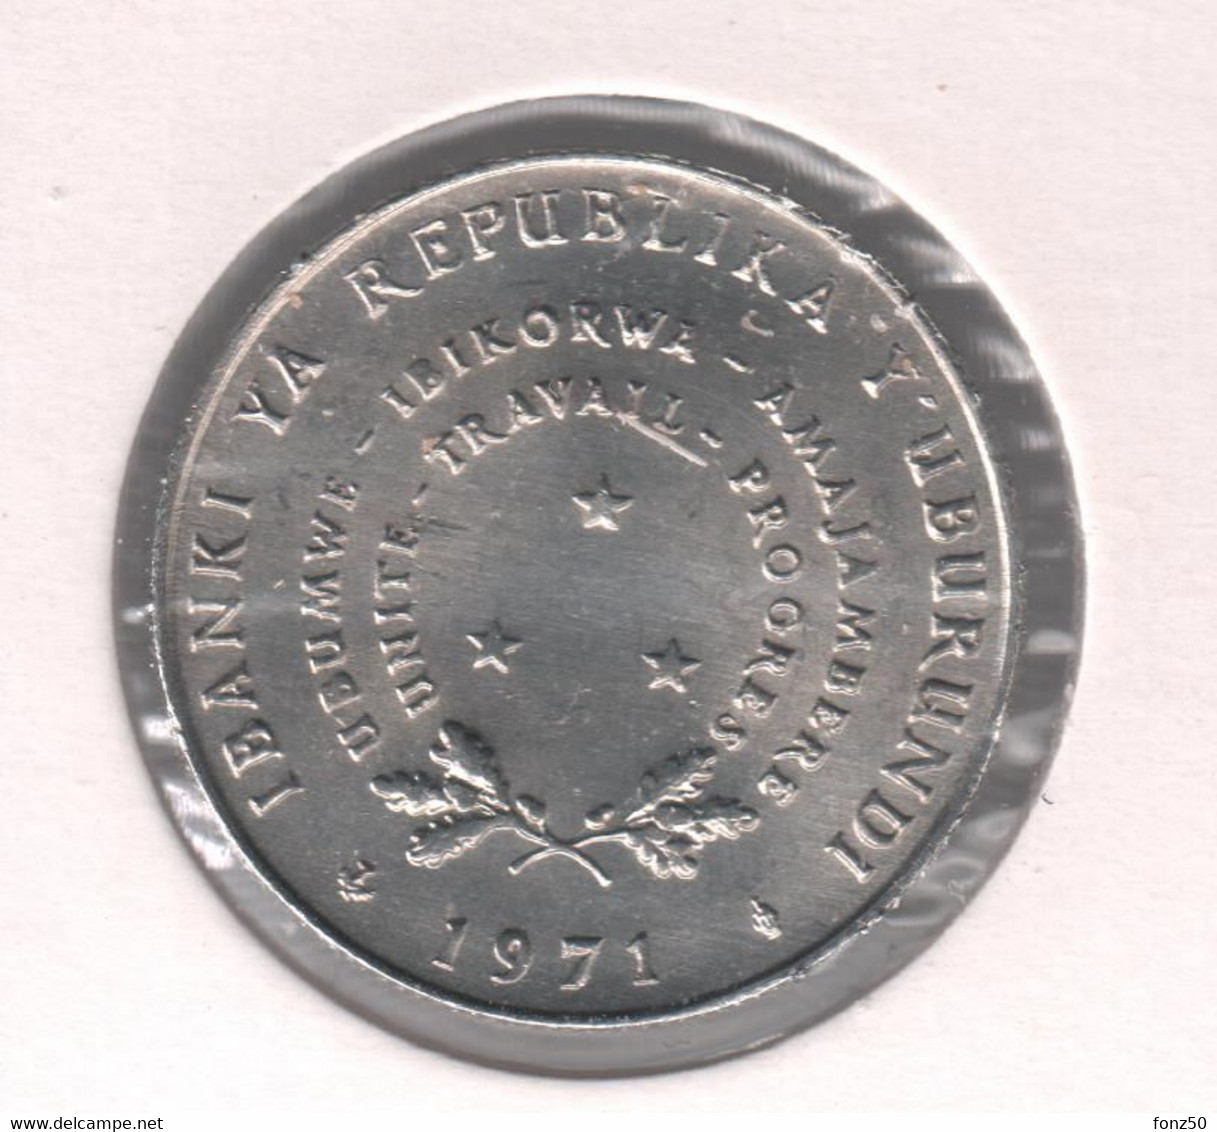 BURUNDI * 5 Francs 1971 * F D C * Nr 10461 - Burundi